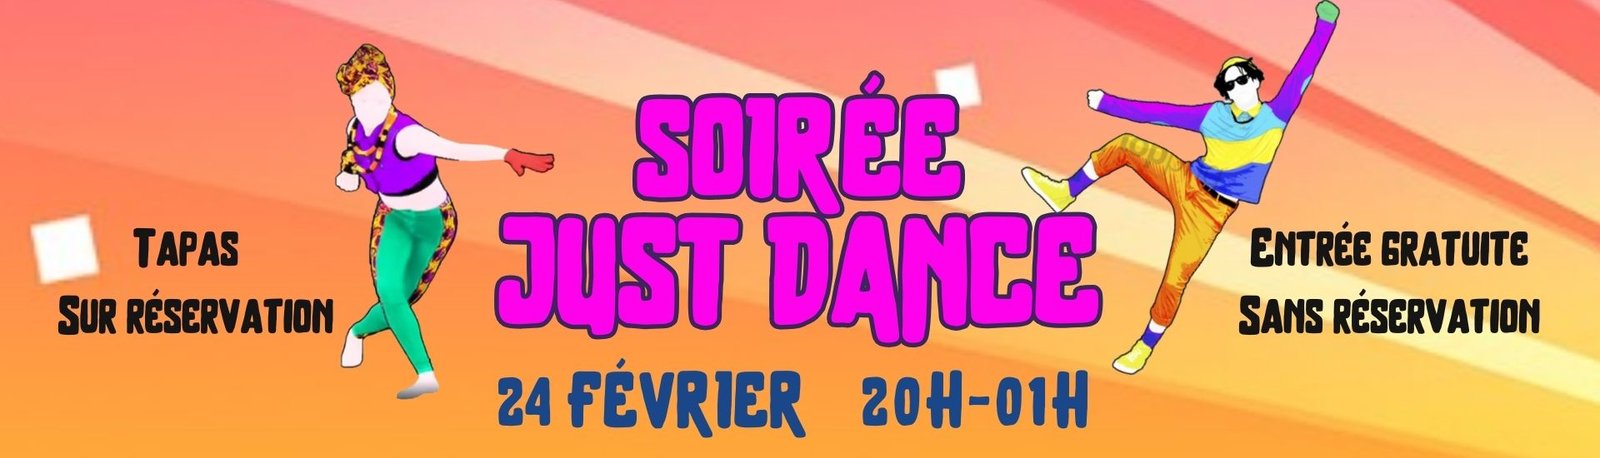 just dance-soirée just dance-soirée dansante-danser-danse-chorégraphies-entrée gratuite-jeu vidéo-soirée montpellier-